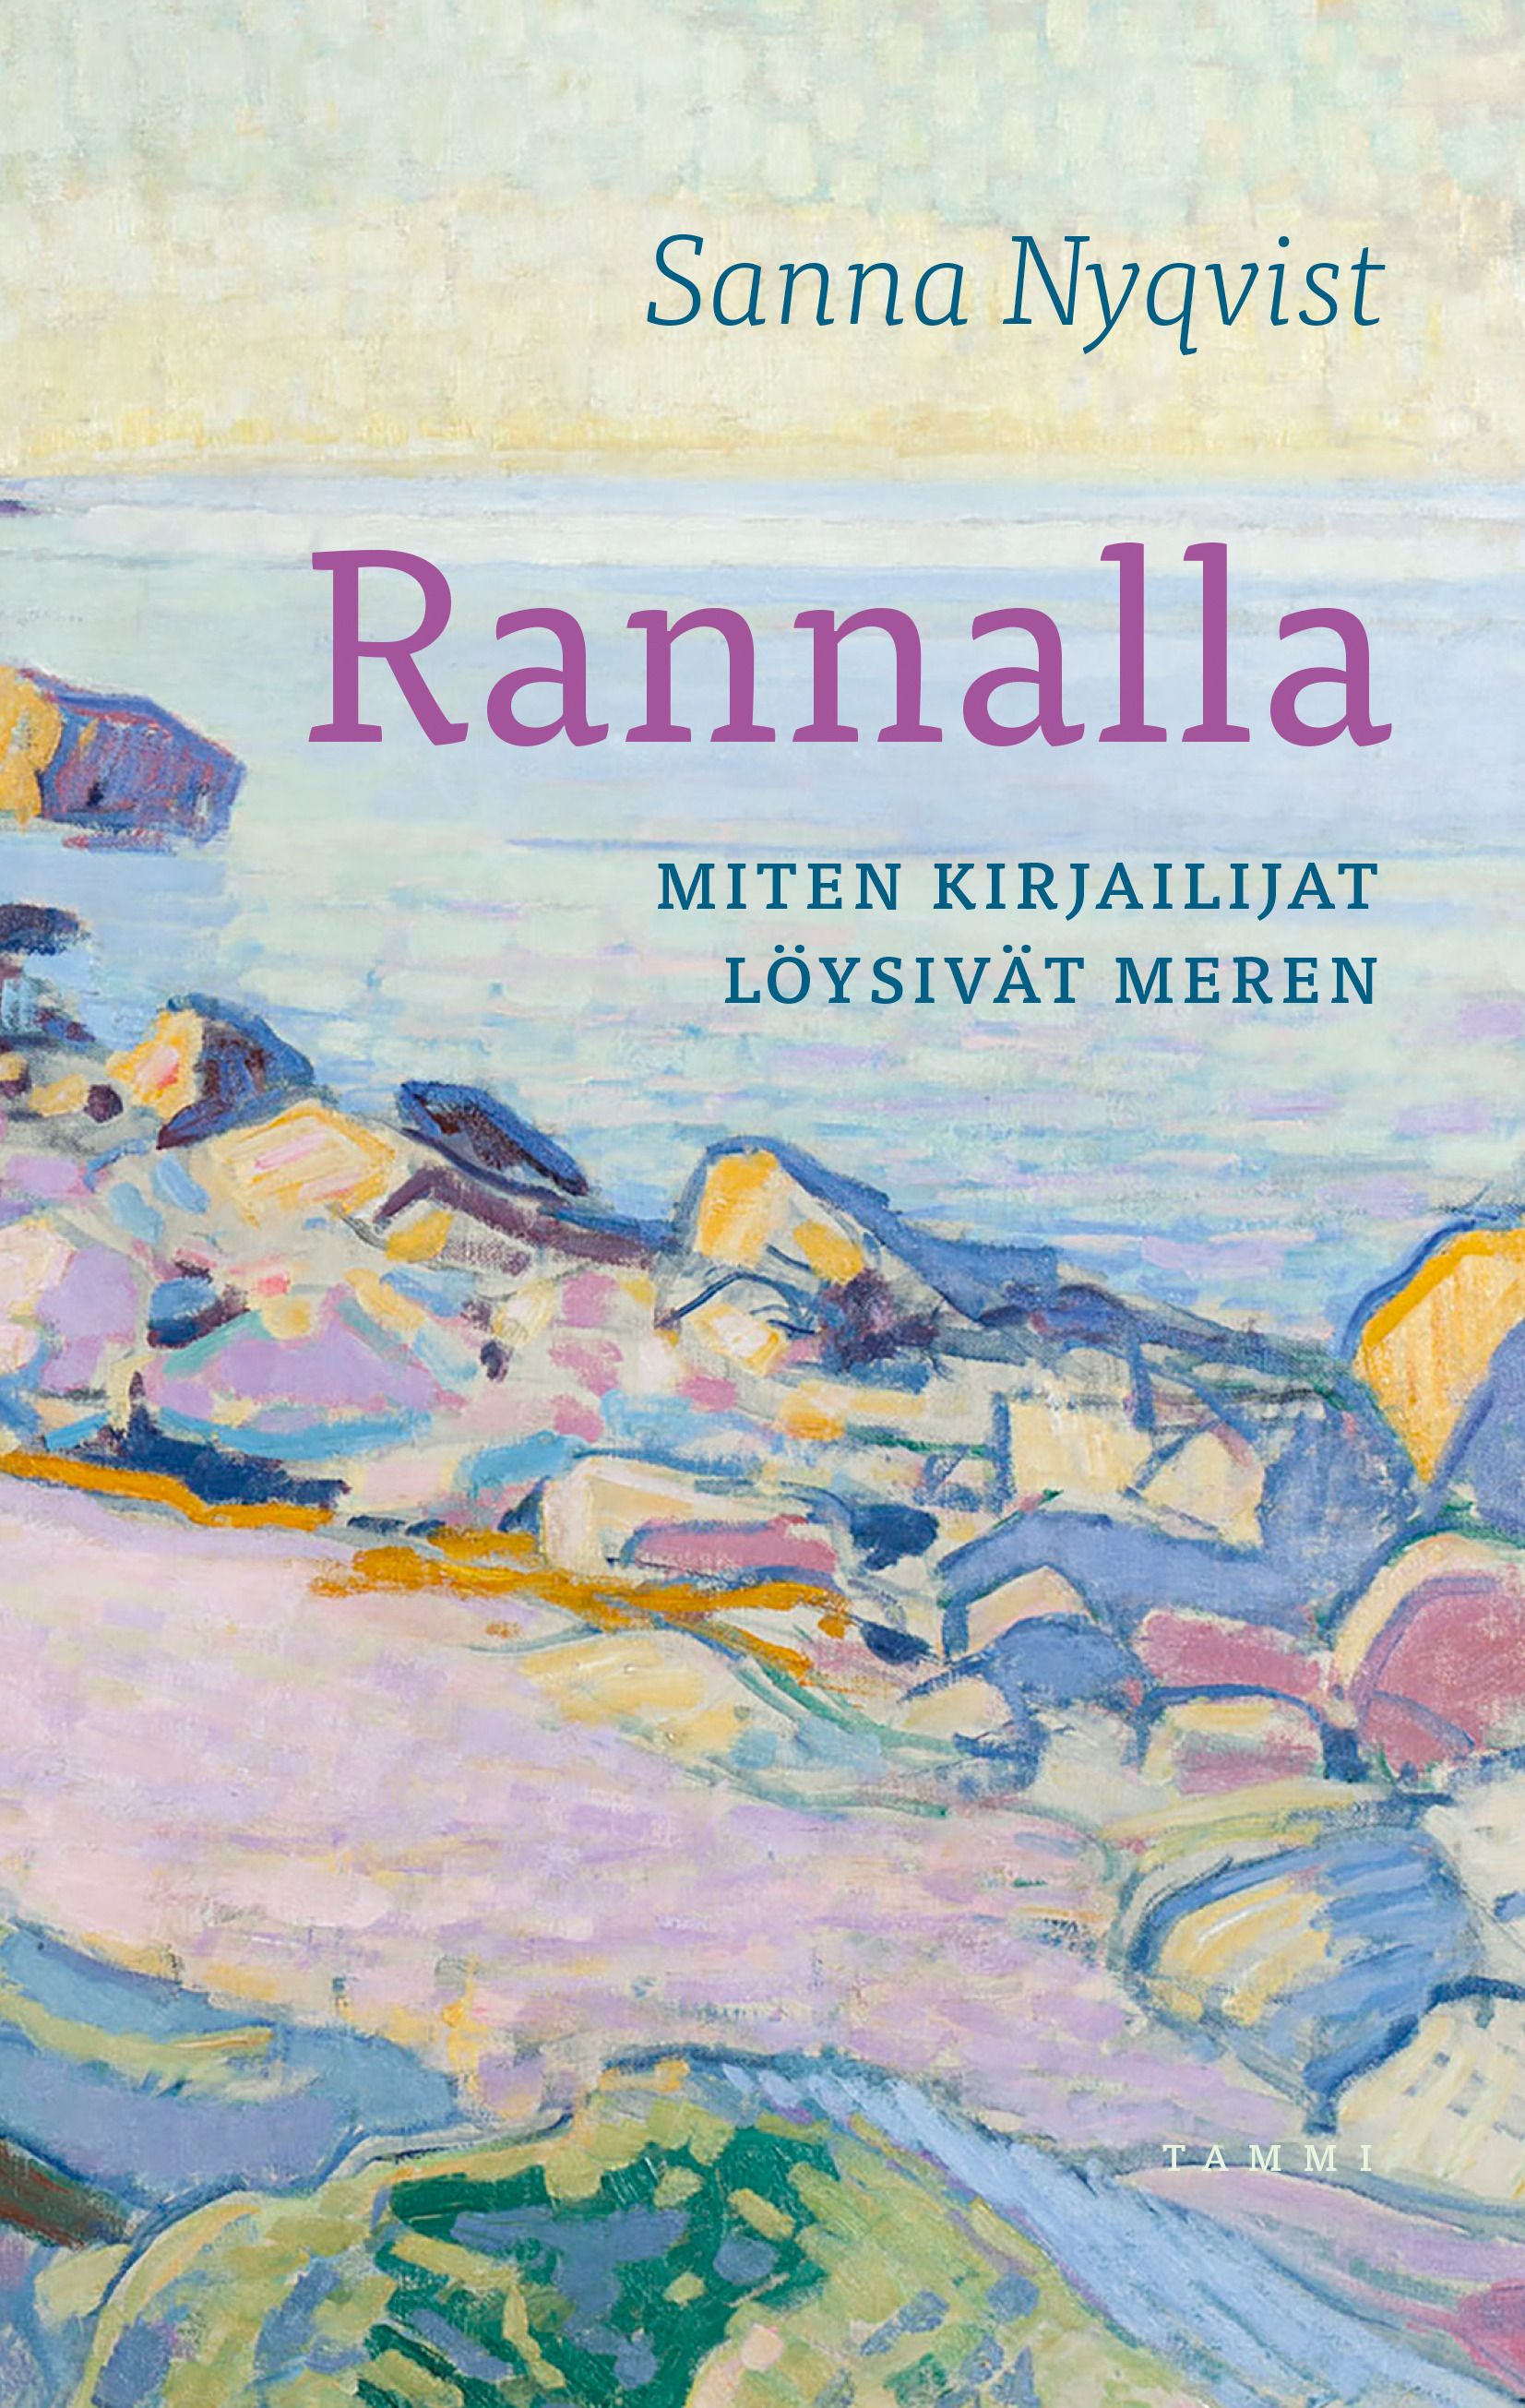 Sanna Nyqvist : Rannalla